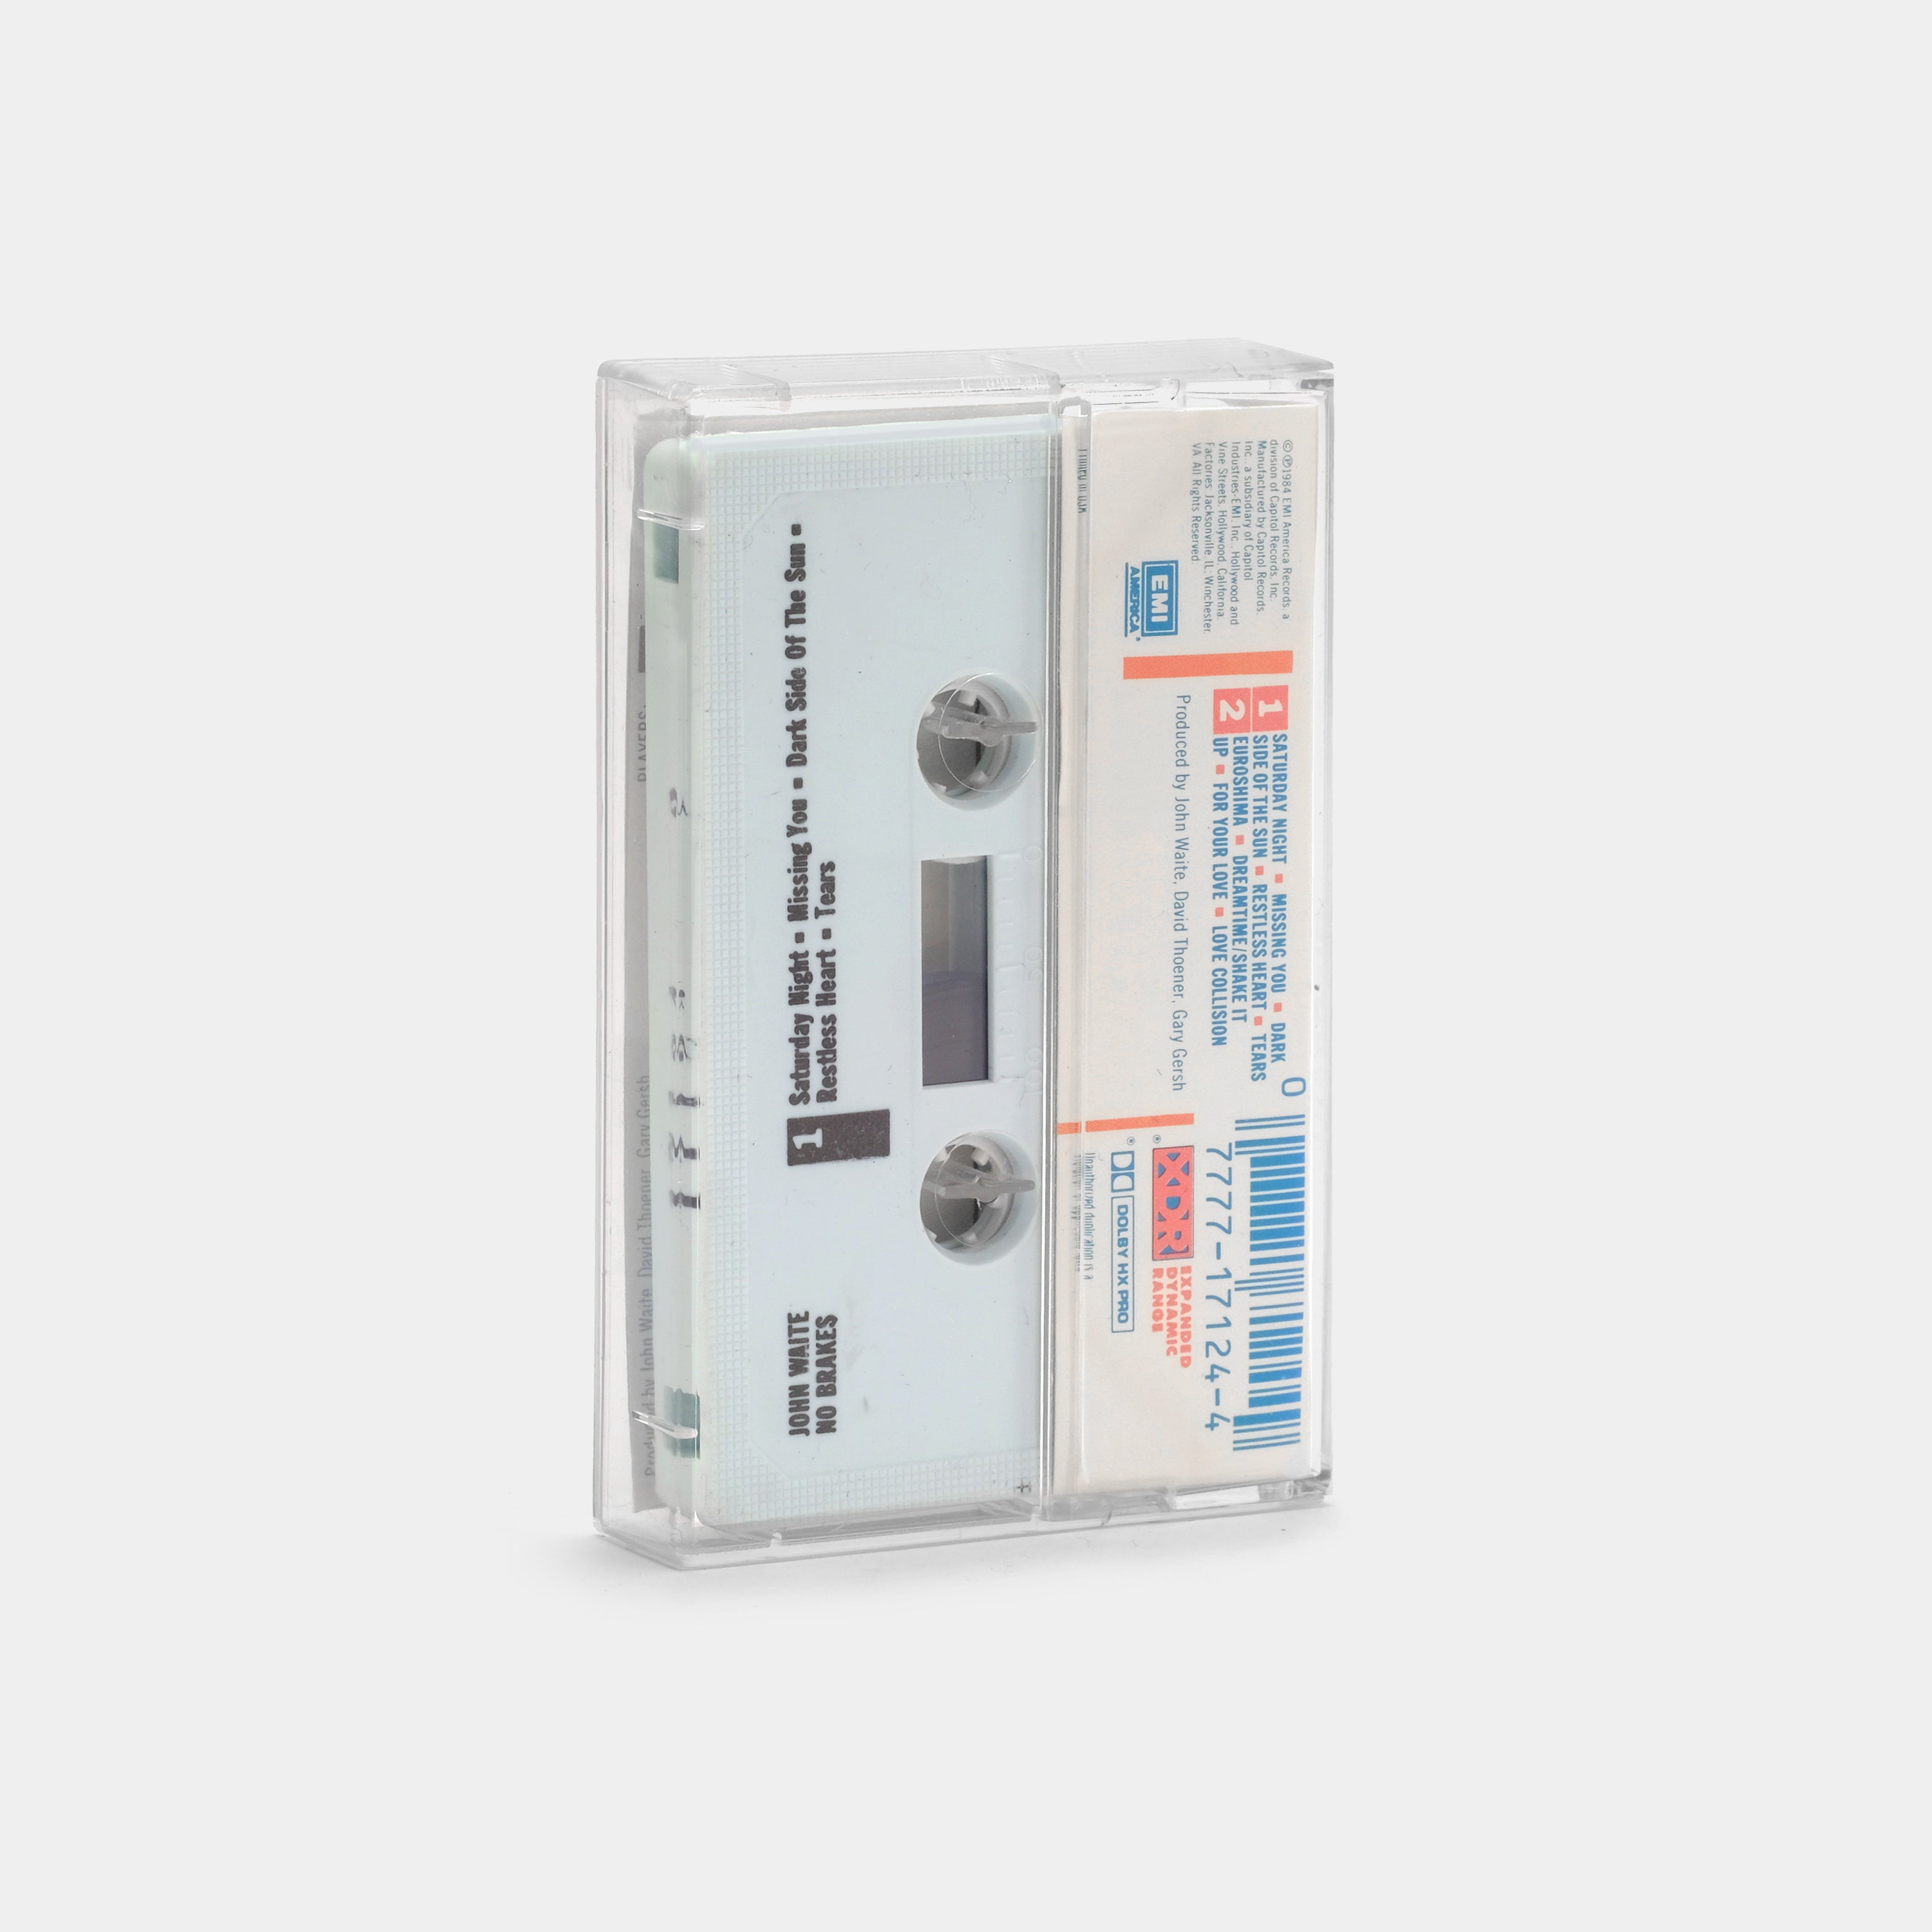 John Waite - No Brakes Cassette Tape